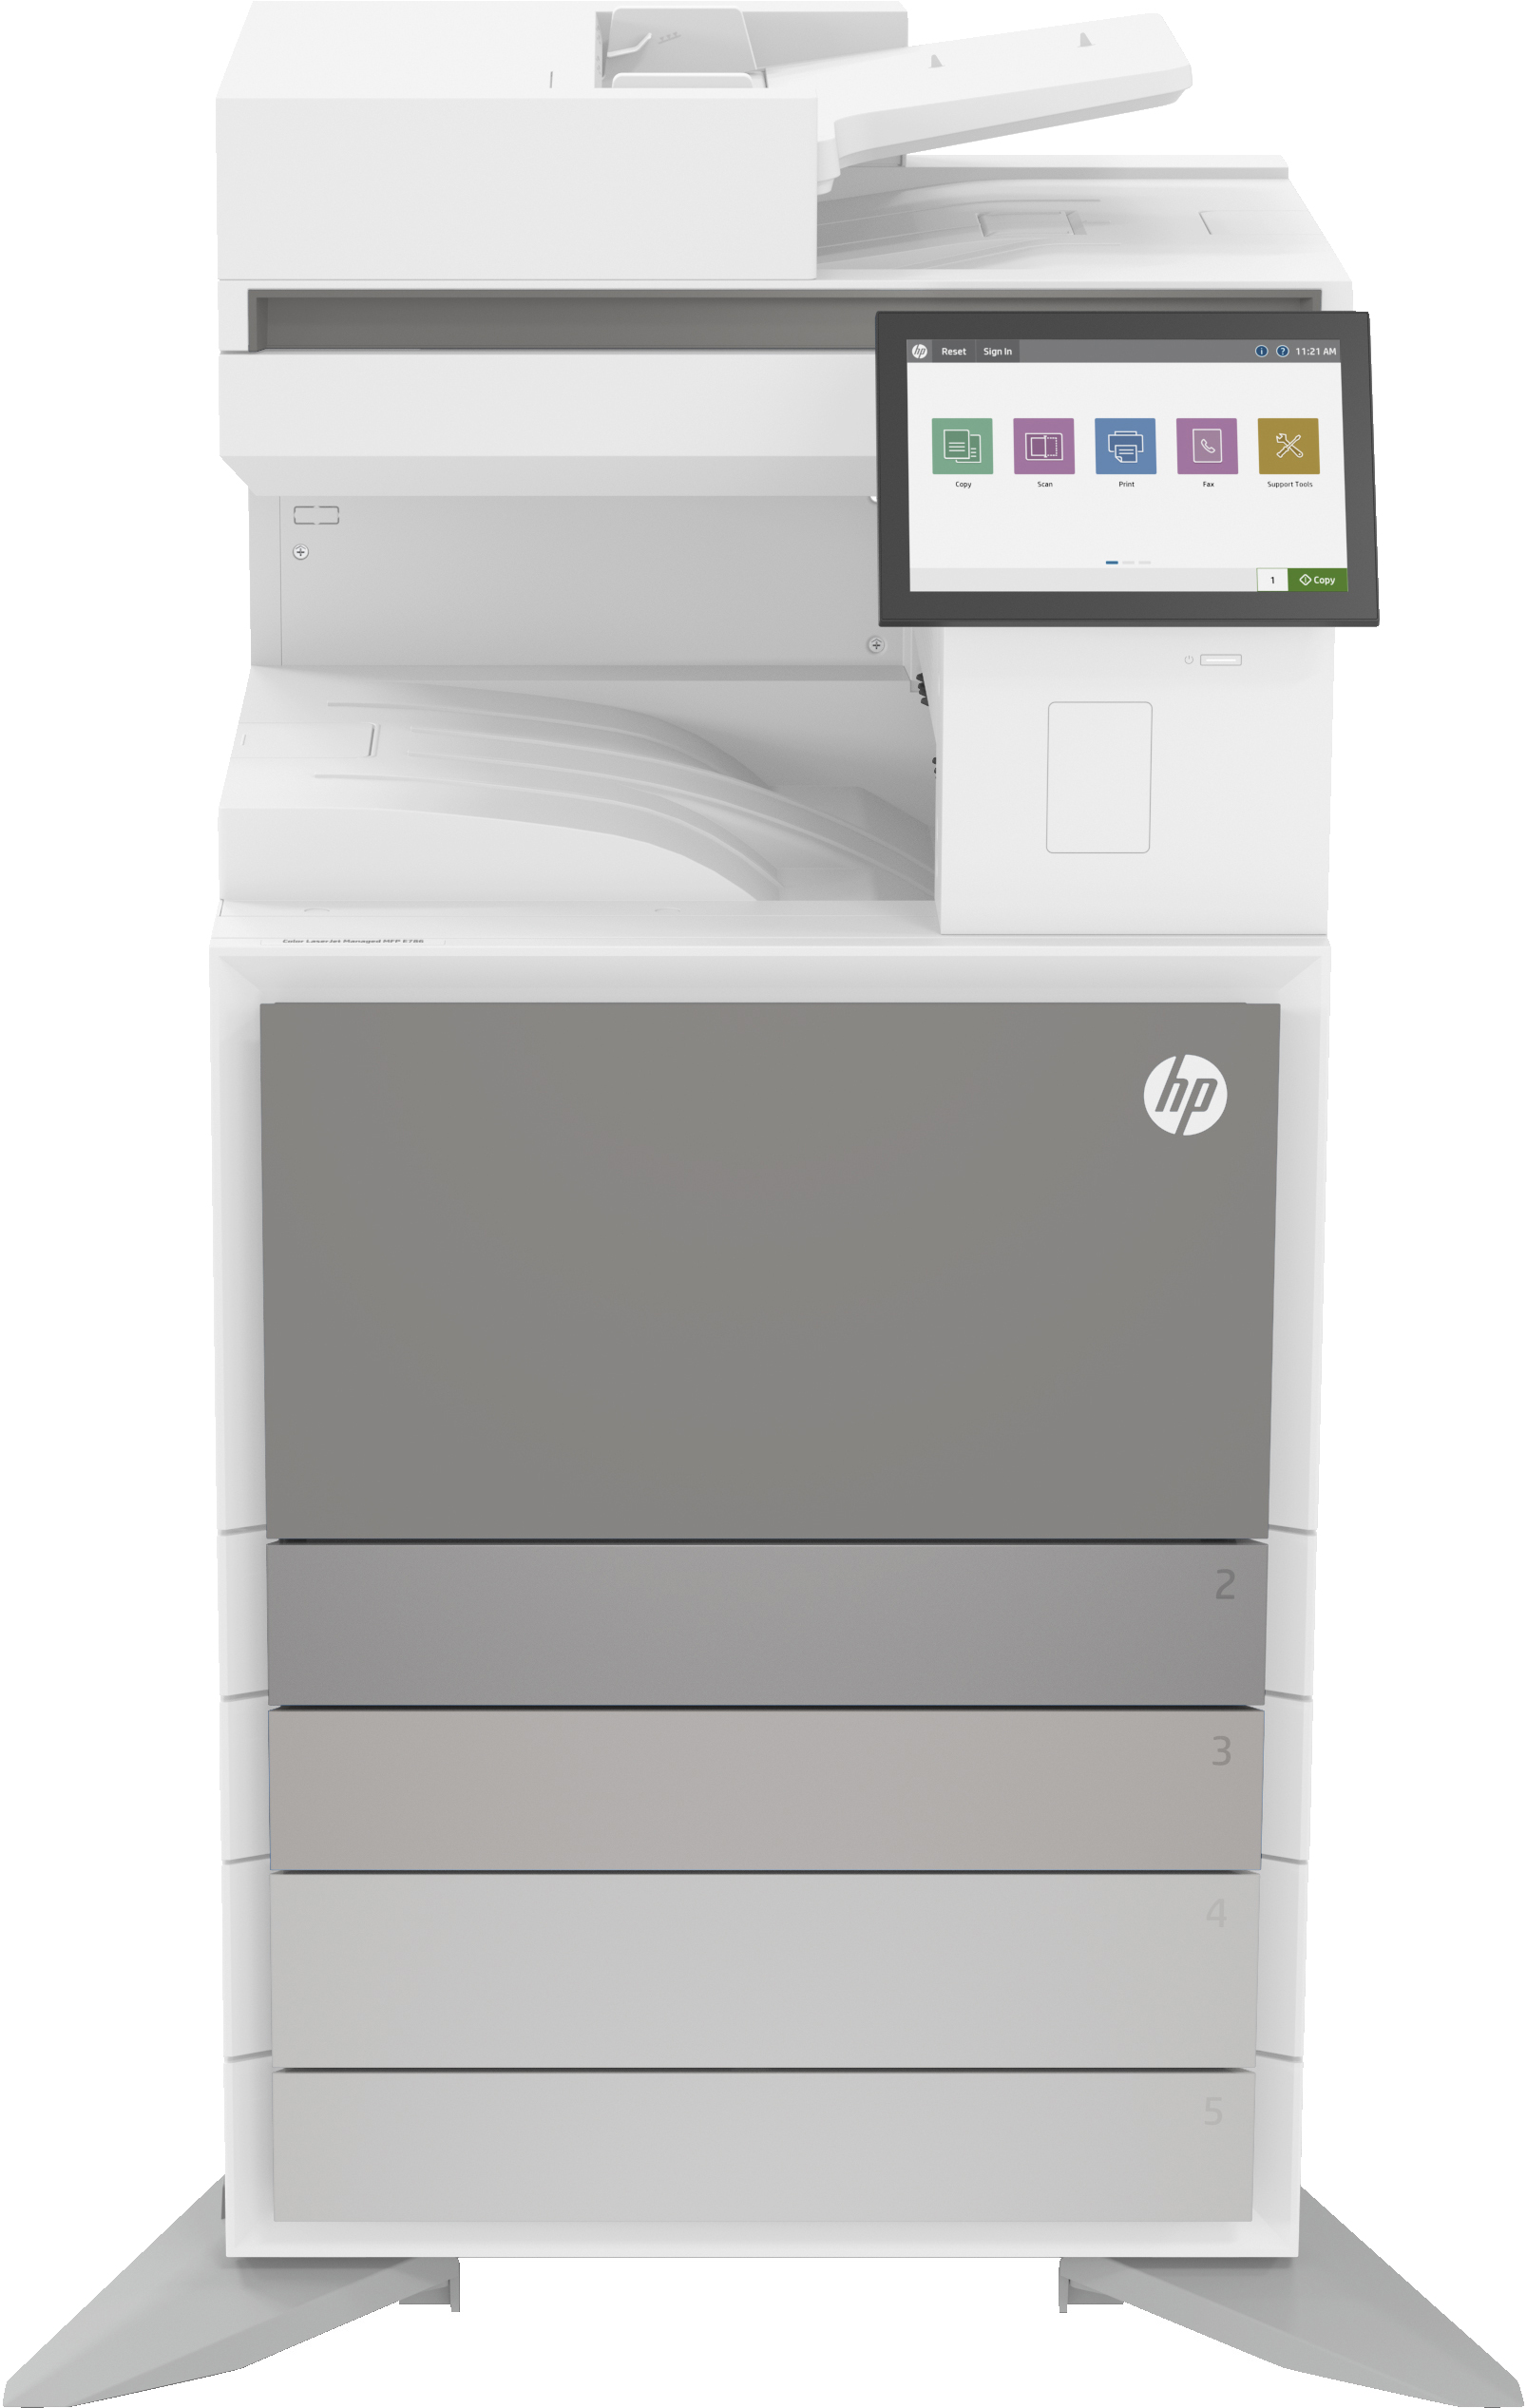 Image of HP LaserJet Stampante multifunzione Managed Color E786dn, Colore, Stampante per Enterprise, Stampa, copia, scansione, fax (opzionale), Stampa fronte/retro; scansione fronte/retro; Scansione verso e-mail; Scansione su PDF